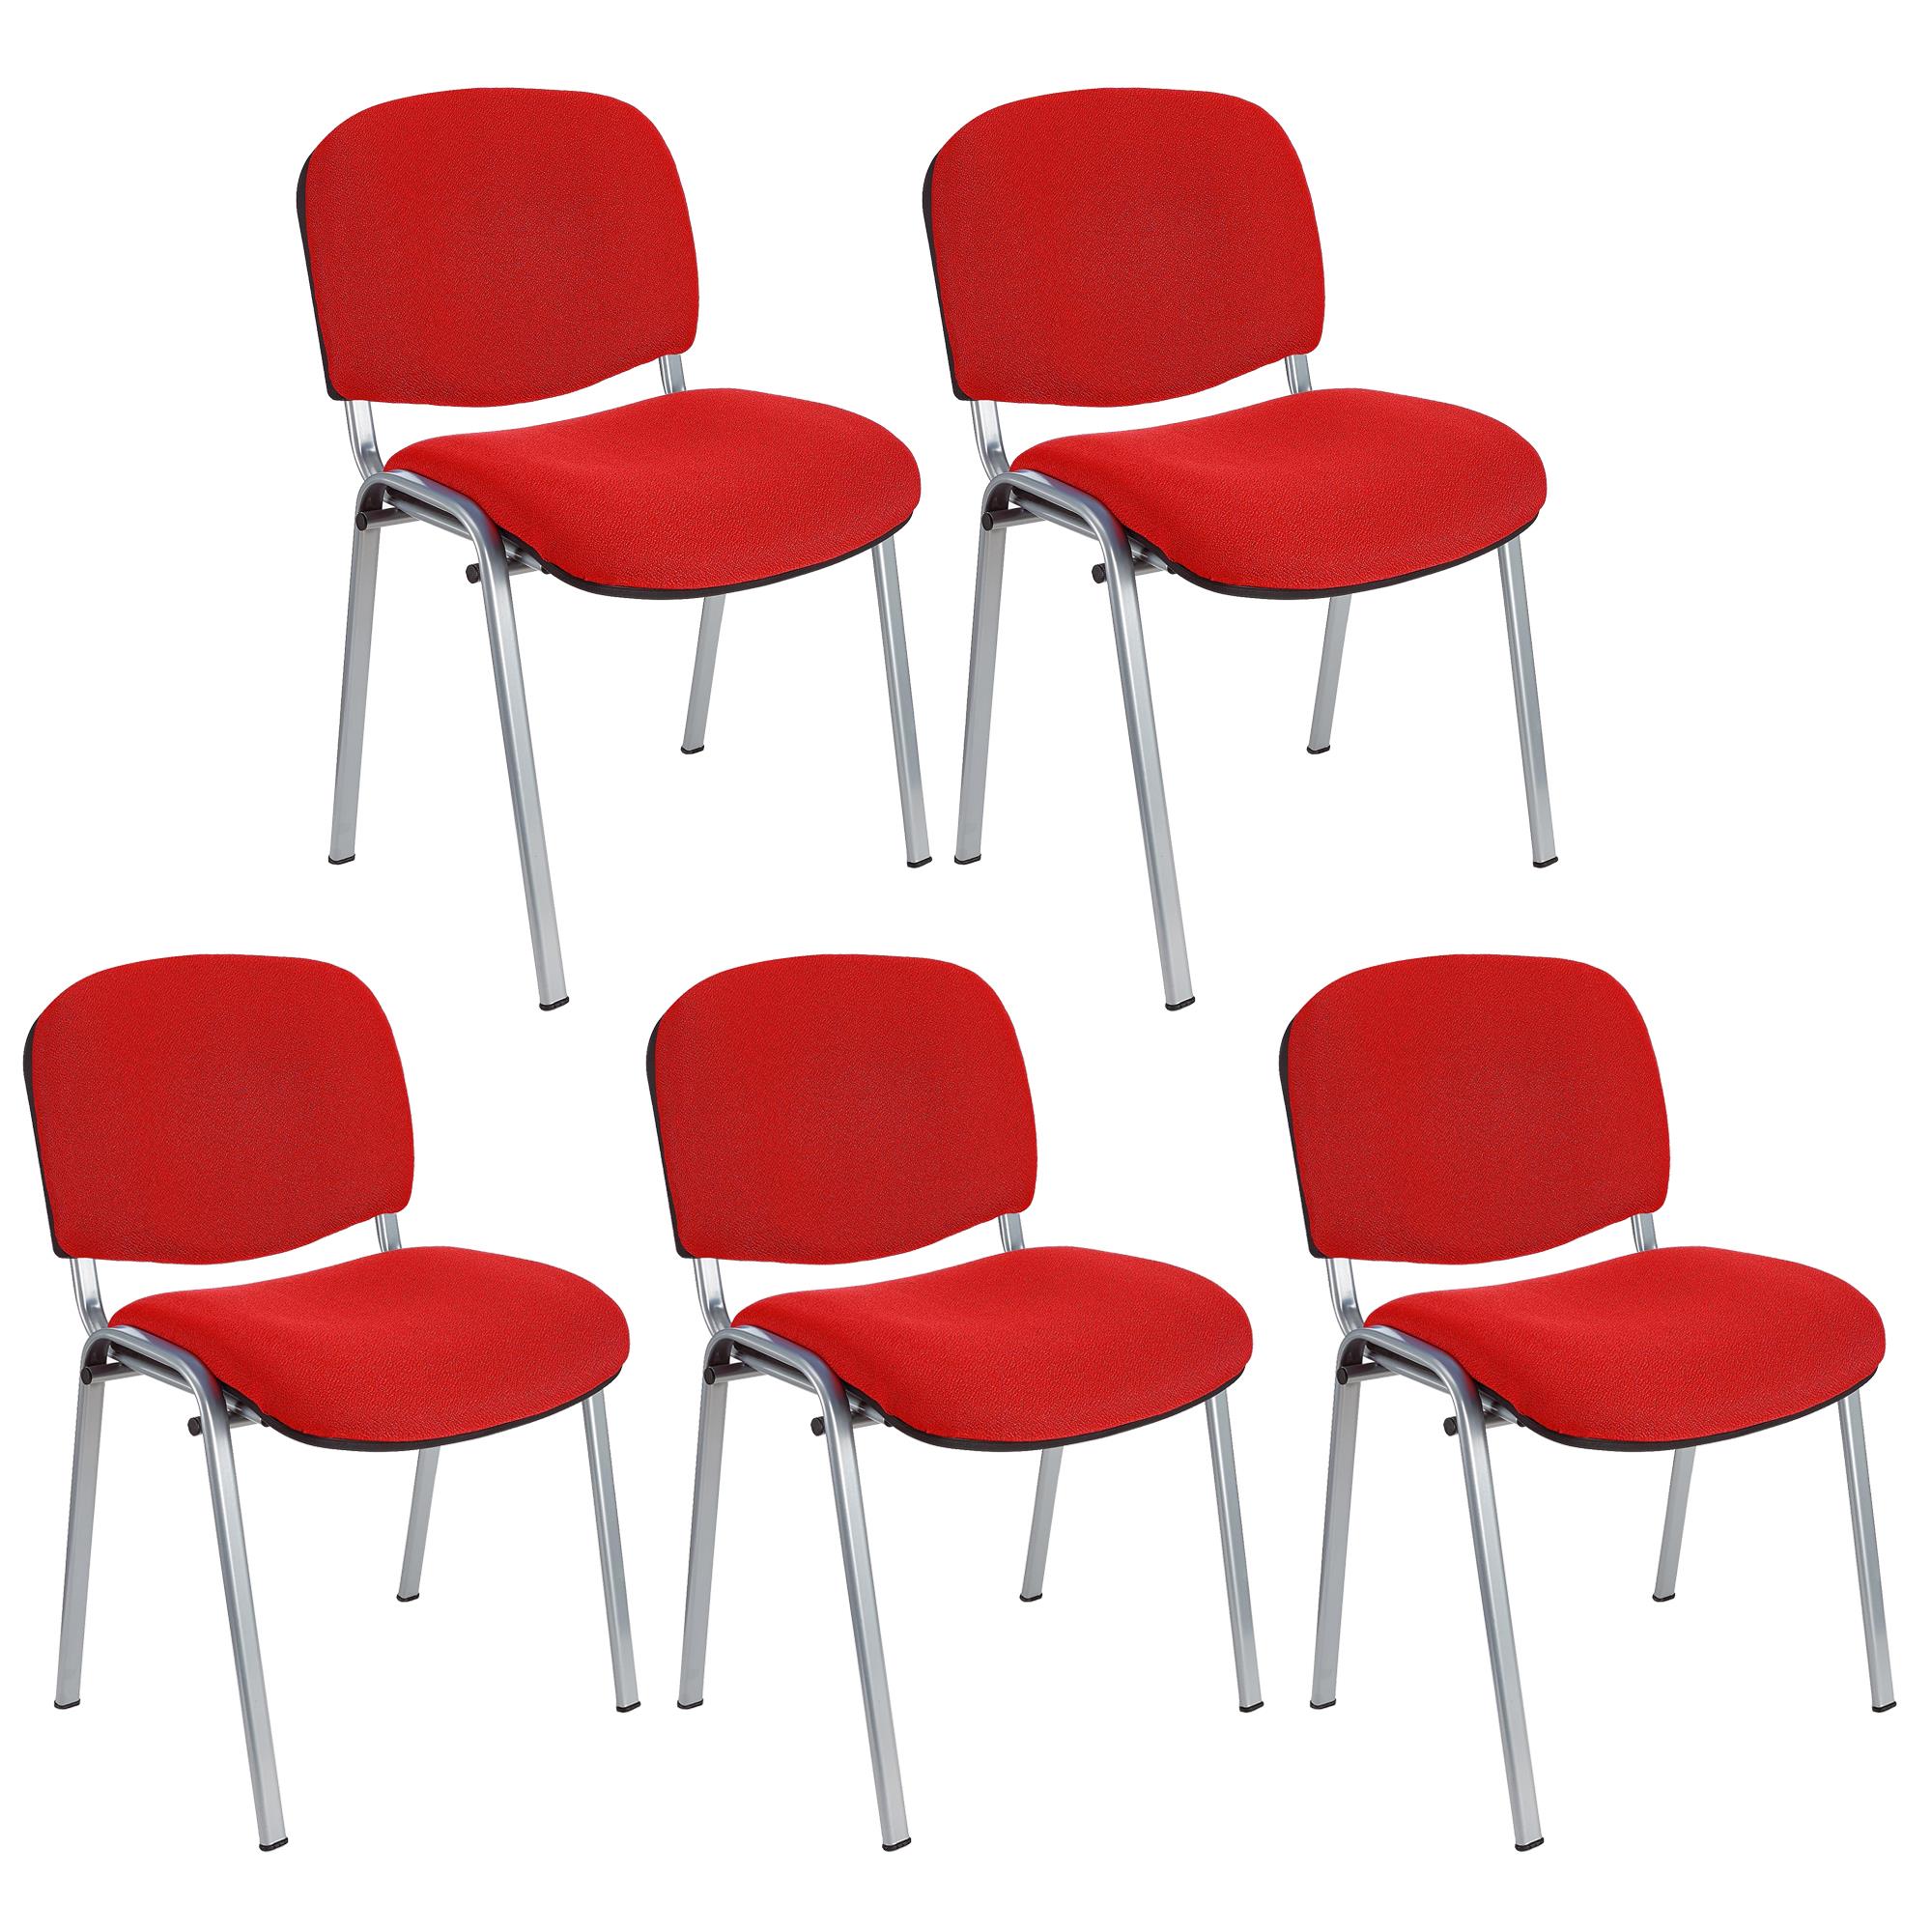 Lote 5 Cadeiras de Visita MOBY BASE, Confortável e Prática, Pernas Cinza, Cor Vermelho